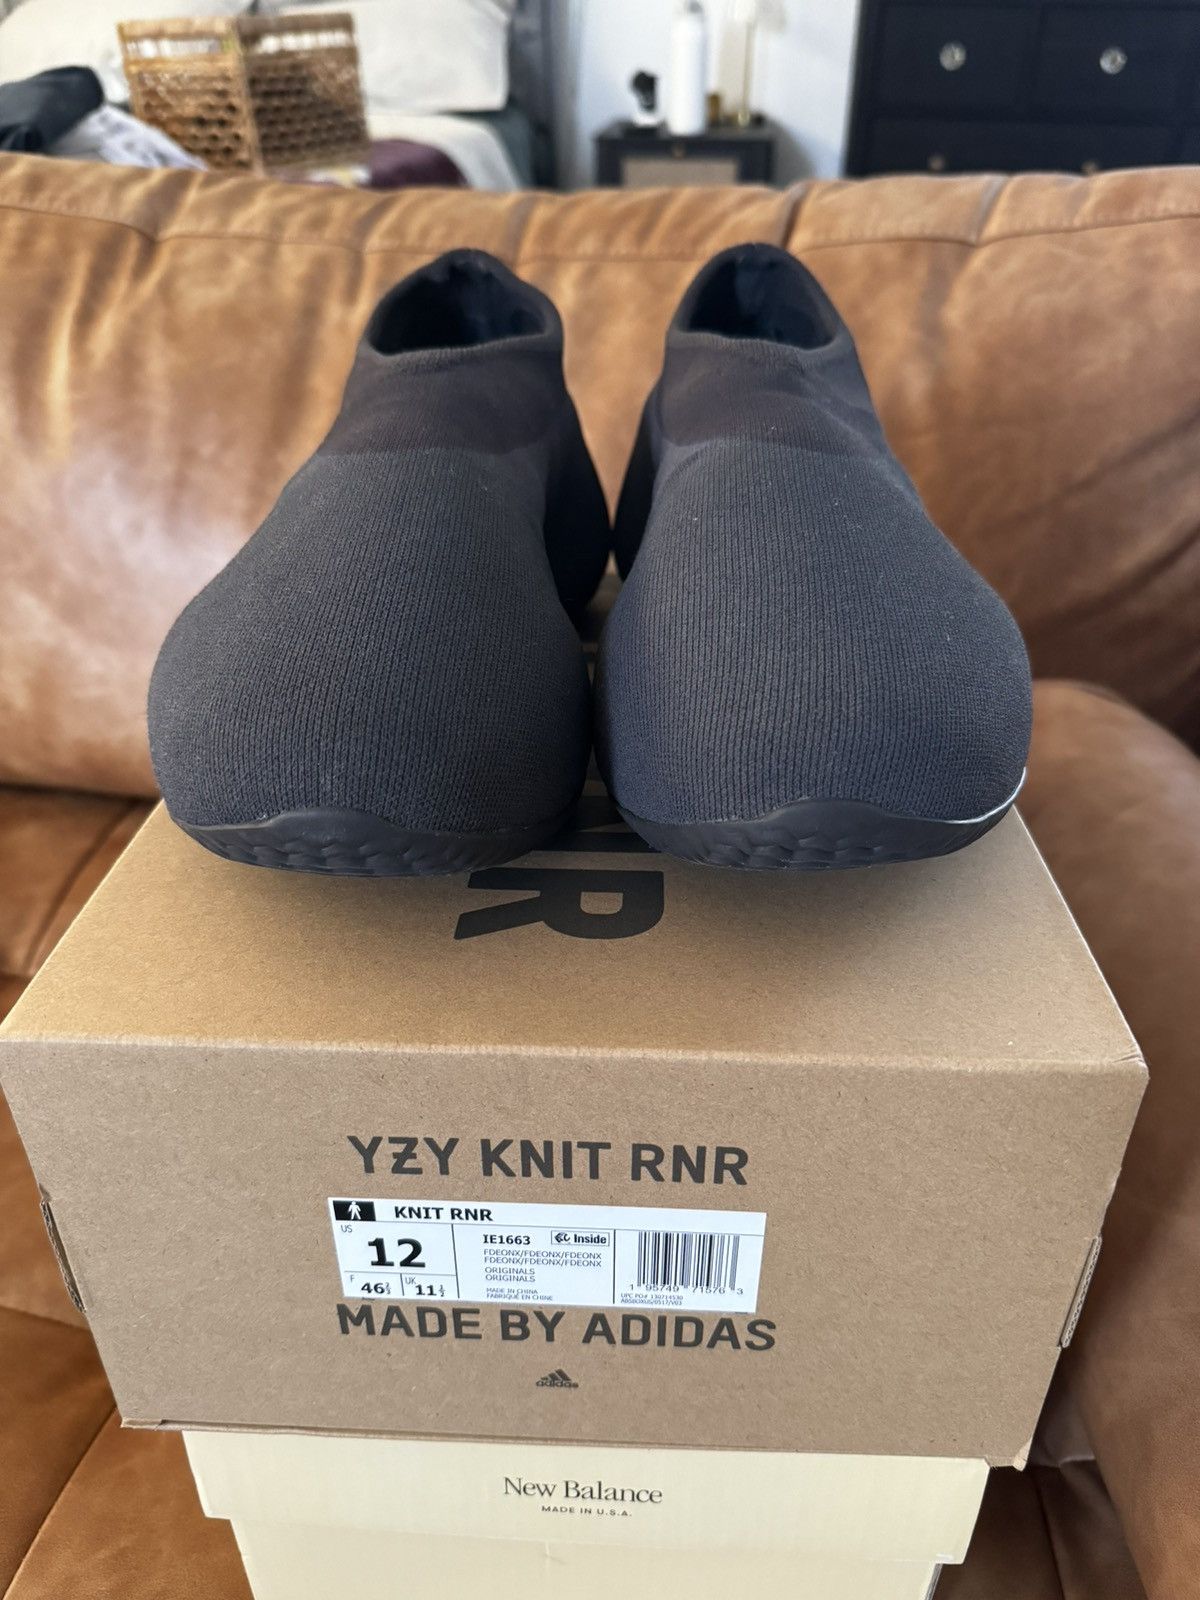 Adidas Yeezy Knit RNR Fade Onyx | Grailed